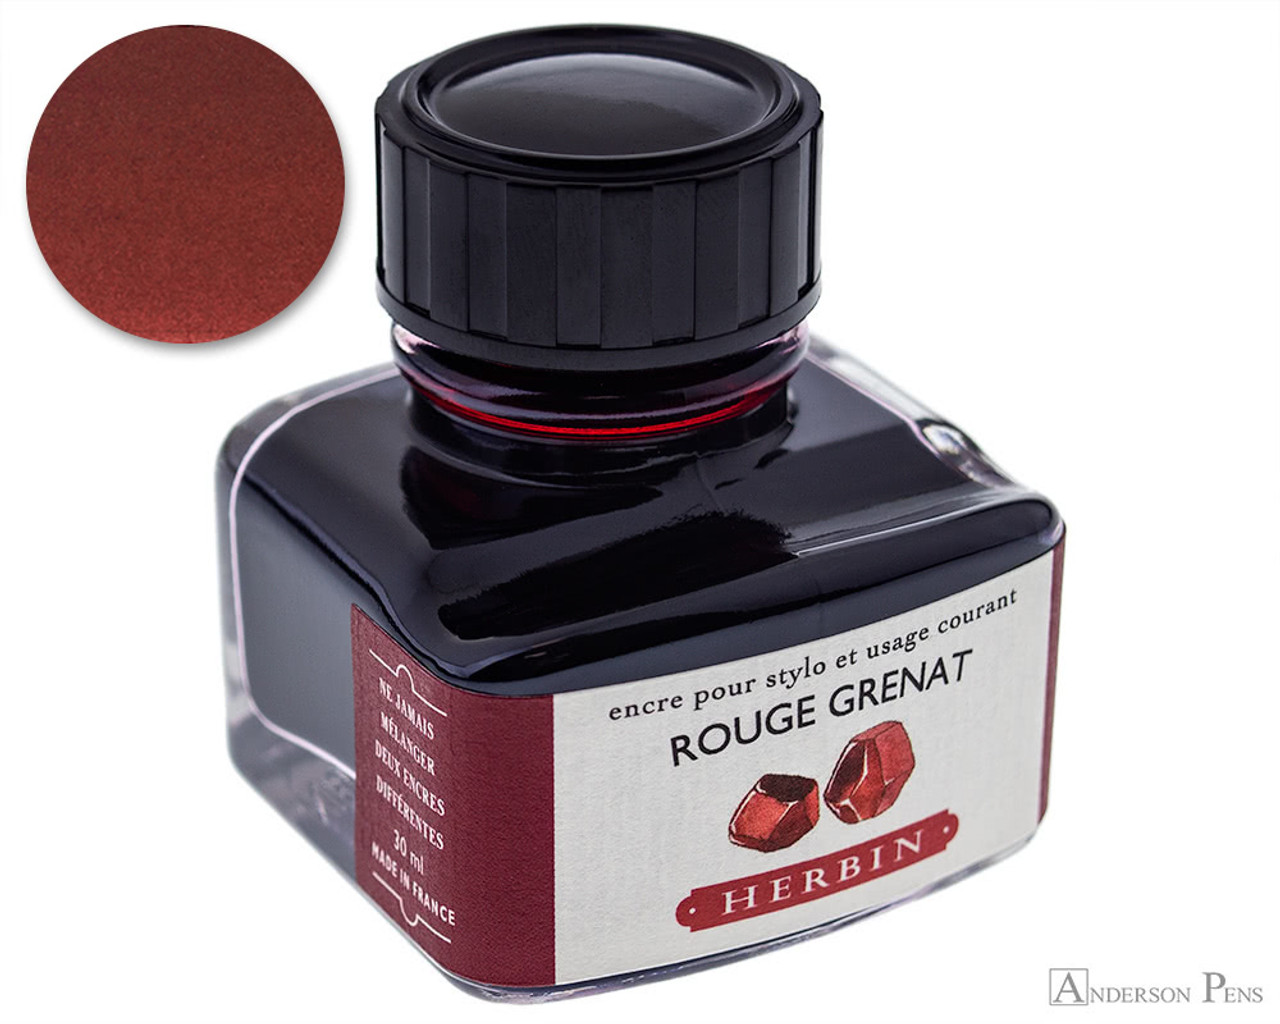 J.Herbin Fountain Pen Ink - 30ml bottle - Rouge Grenat